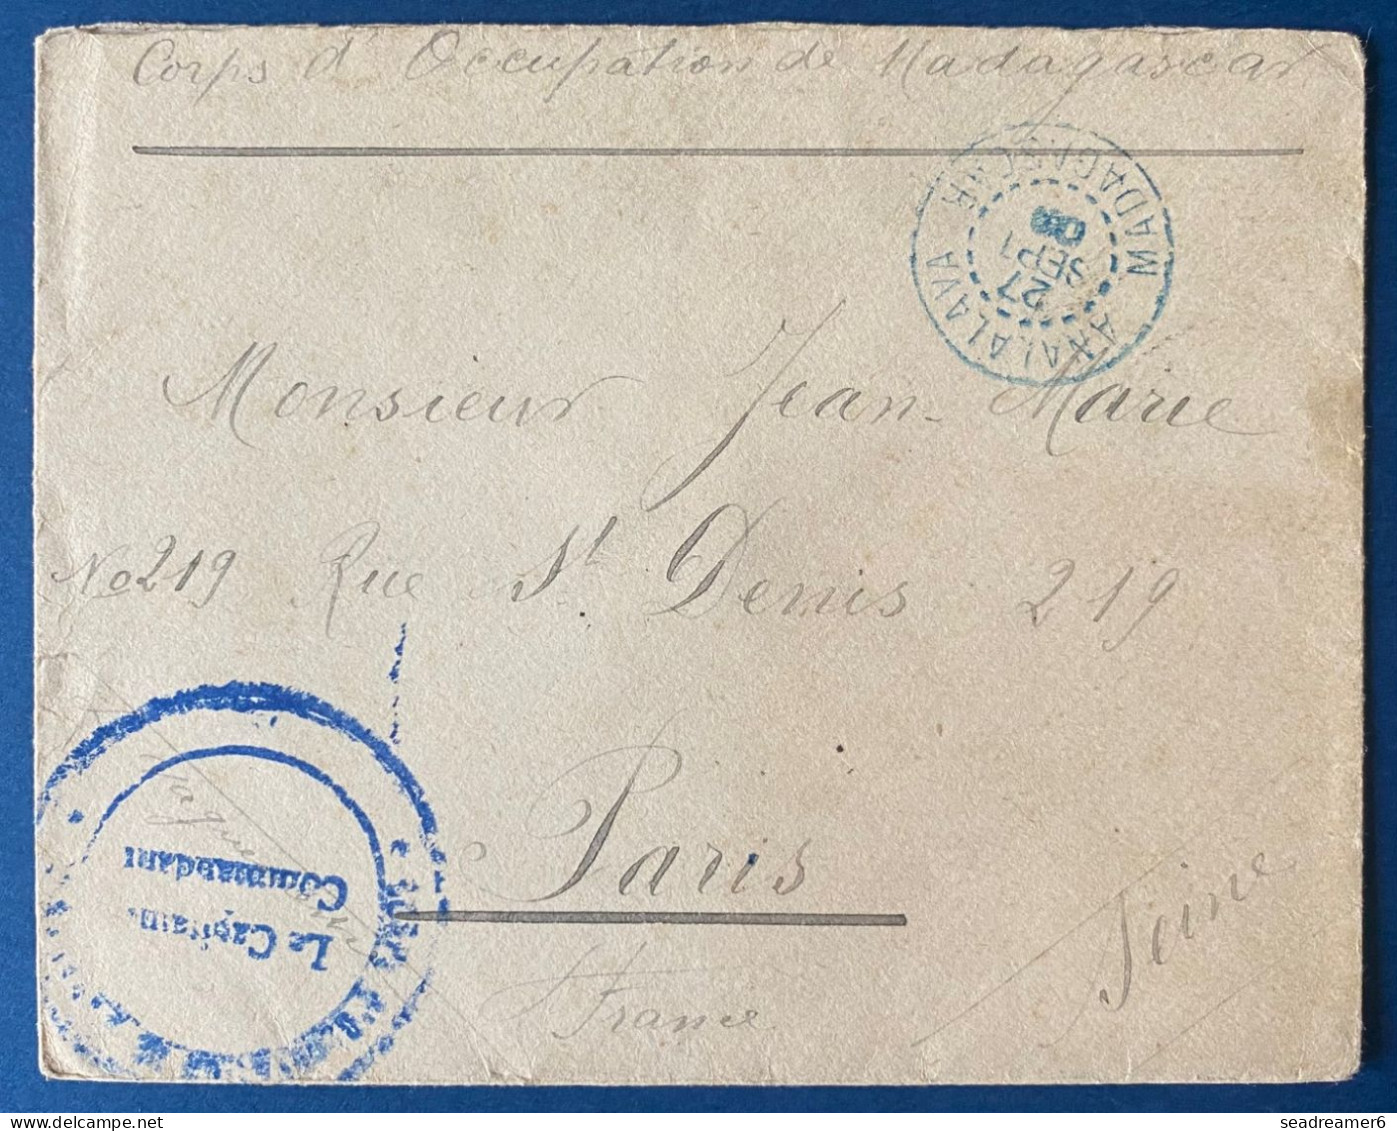 France Colonies Lettre Corps Expeditionnaire De Madagascar Dateur Bleu D'ANALALAVA De 1903 Pour PARIS, Au Dos Transit - Briefe U. Dokumente